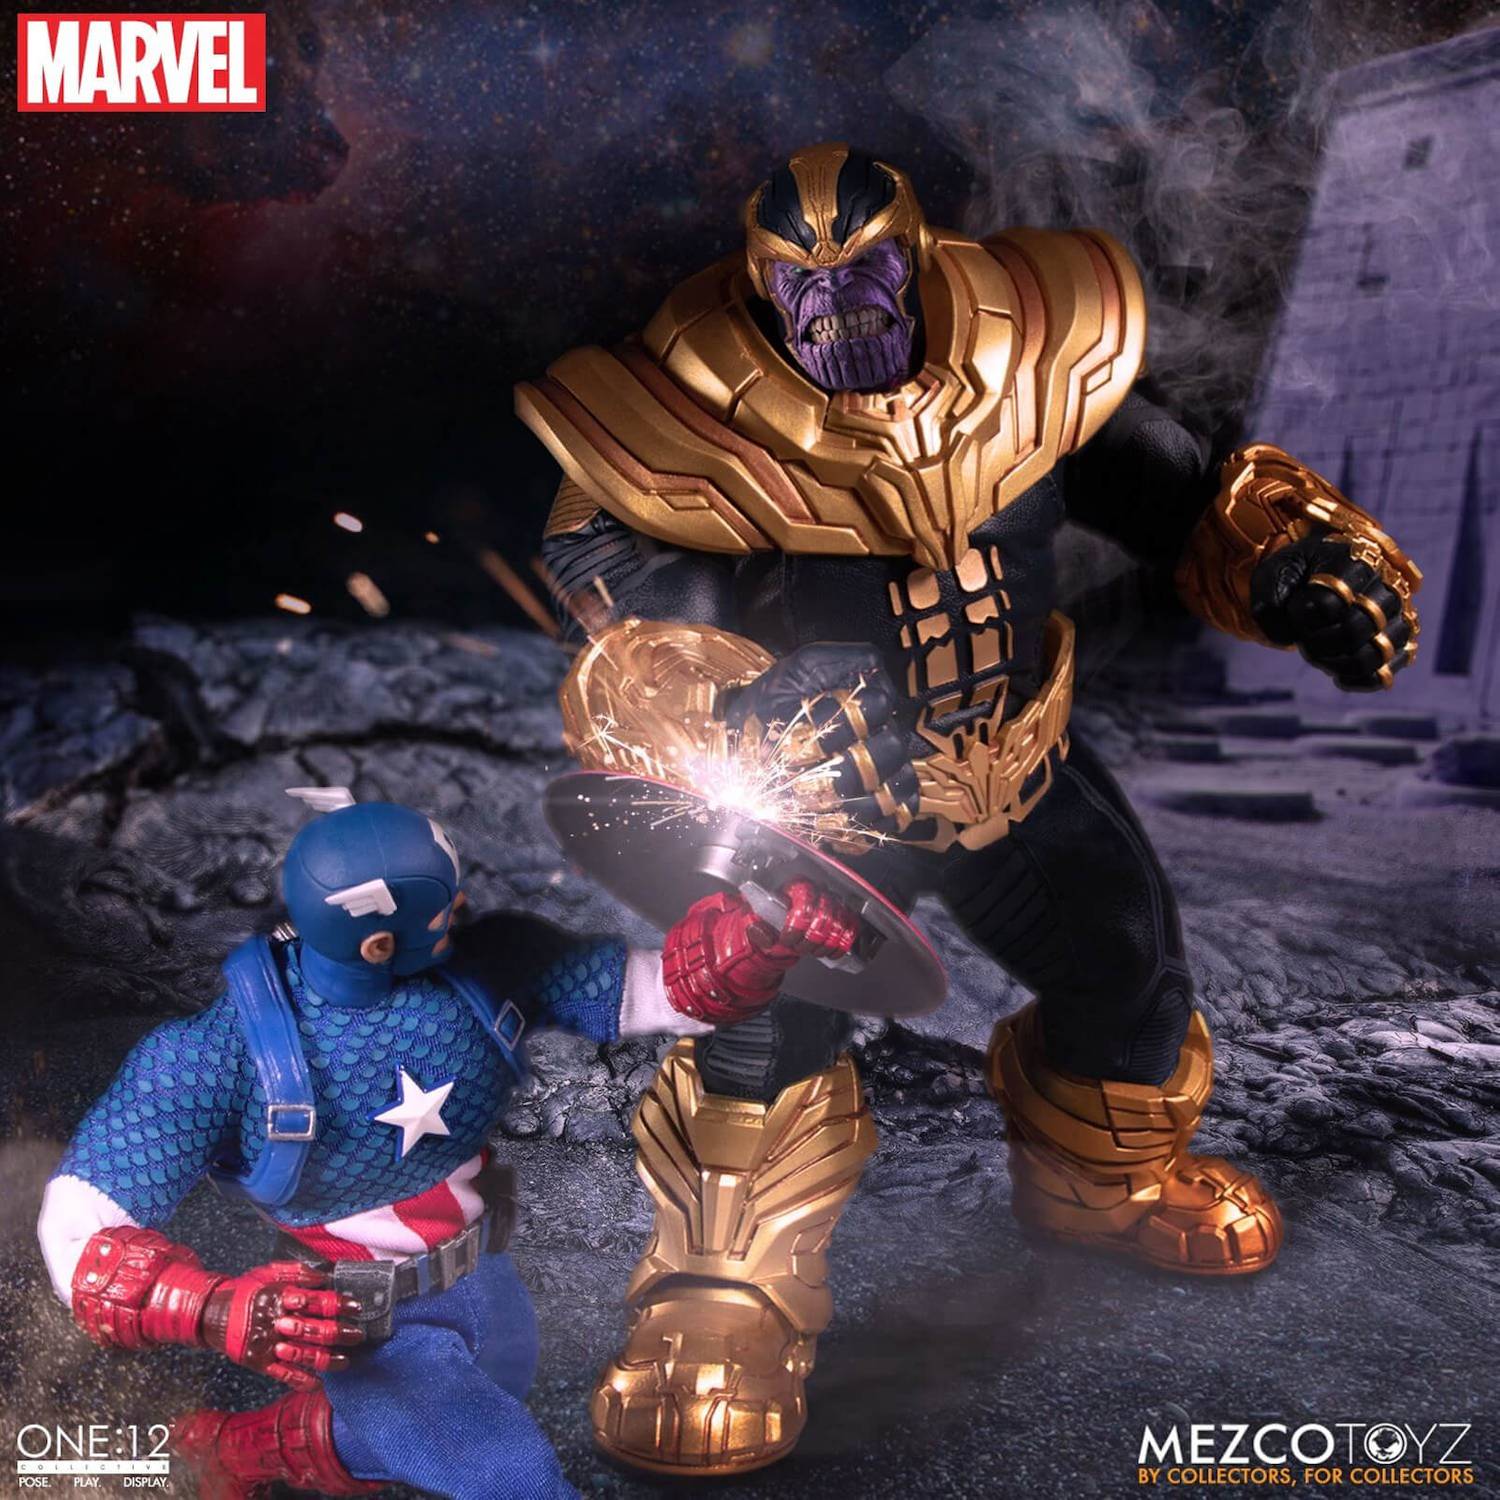 Mezco Toyz One:12 Collective Marvel Thanos Action Figure